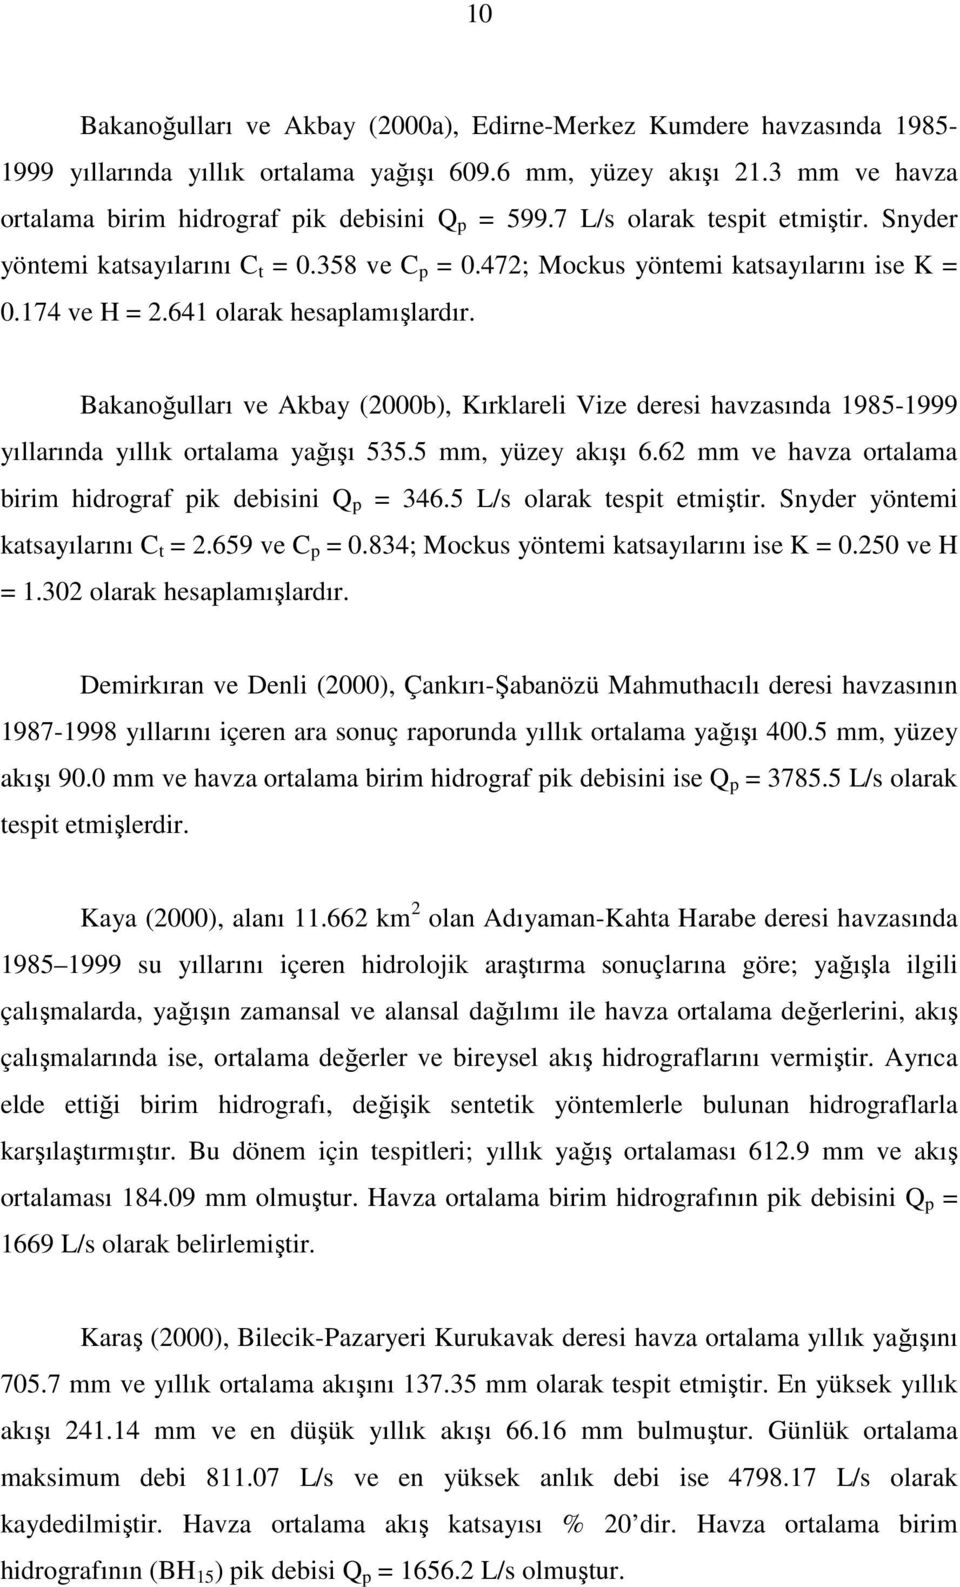 Bakanoğulları ve Akbay (2000b), Kırklareli Vize deresi havzasında 1985-1999 yıllarında yıllık ortalama yağışı 535.5 mm, yüzey akışı 6.62 mm ve havza ortalama birim hidrograf pik debisini Q p = 346.